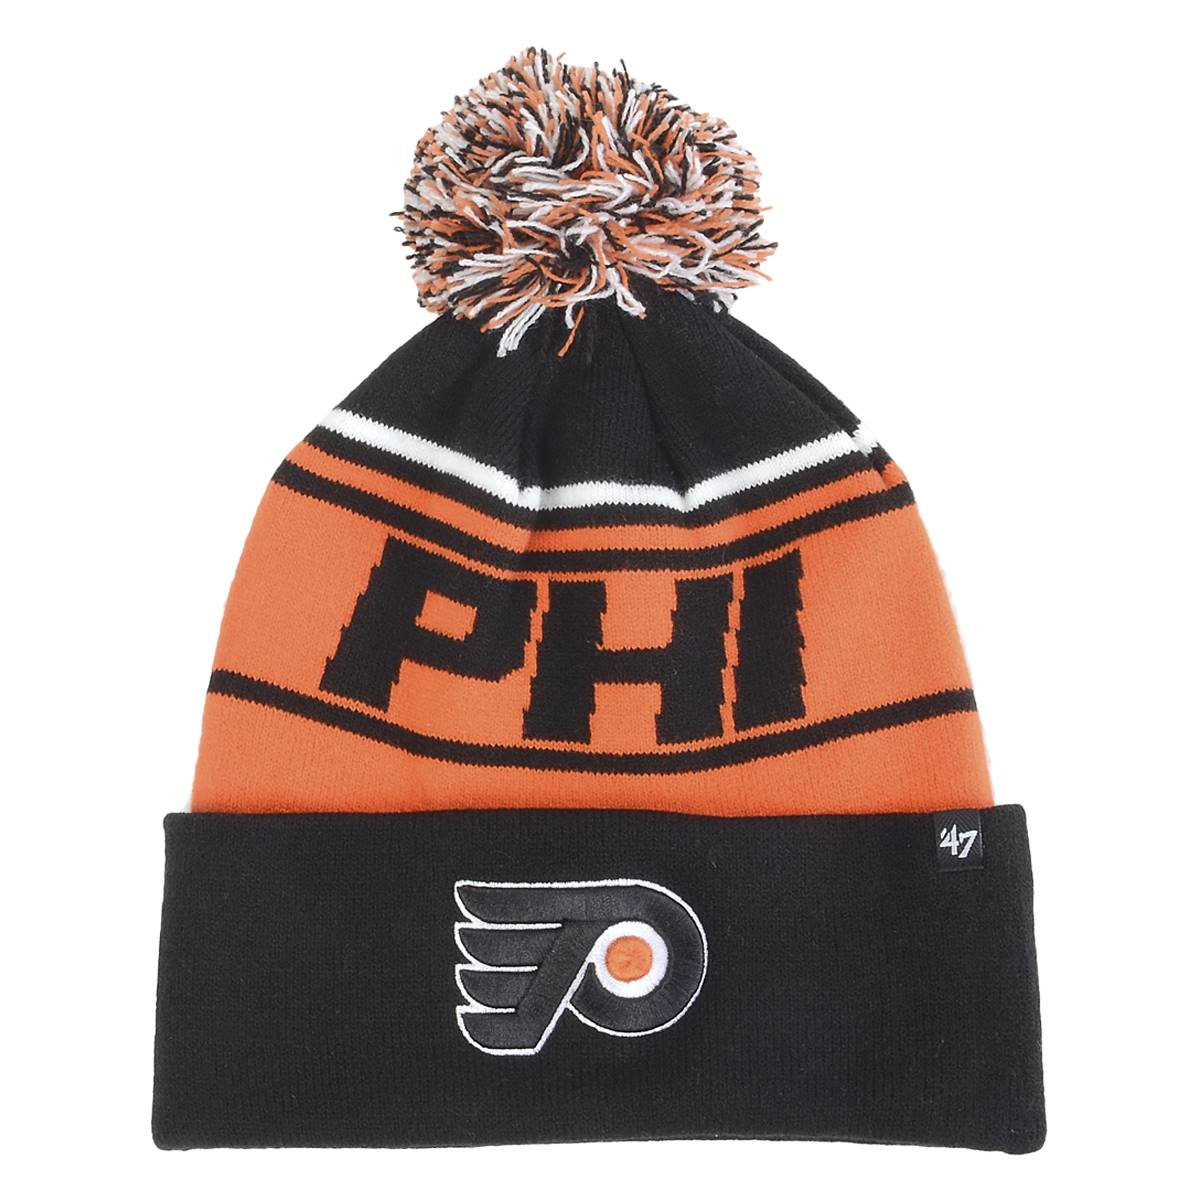 Mens '47 Brand Philadelphia Flyers Stylus Cuff Knit Hat With Pom